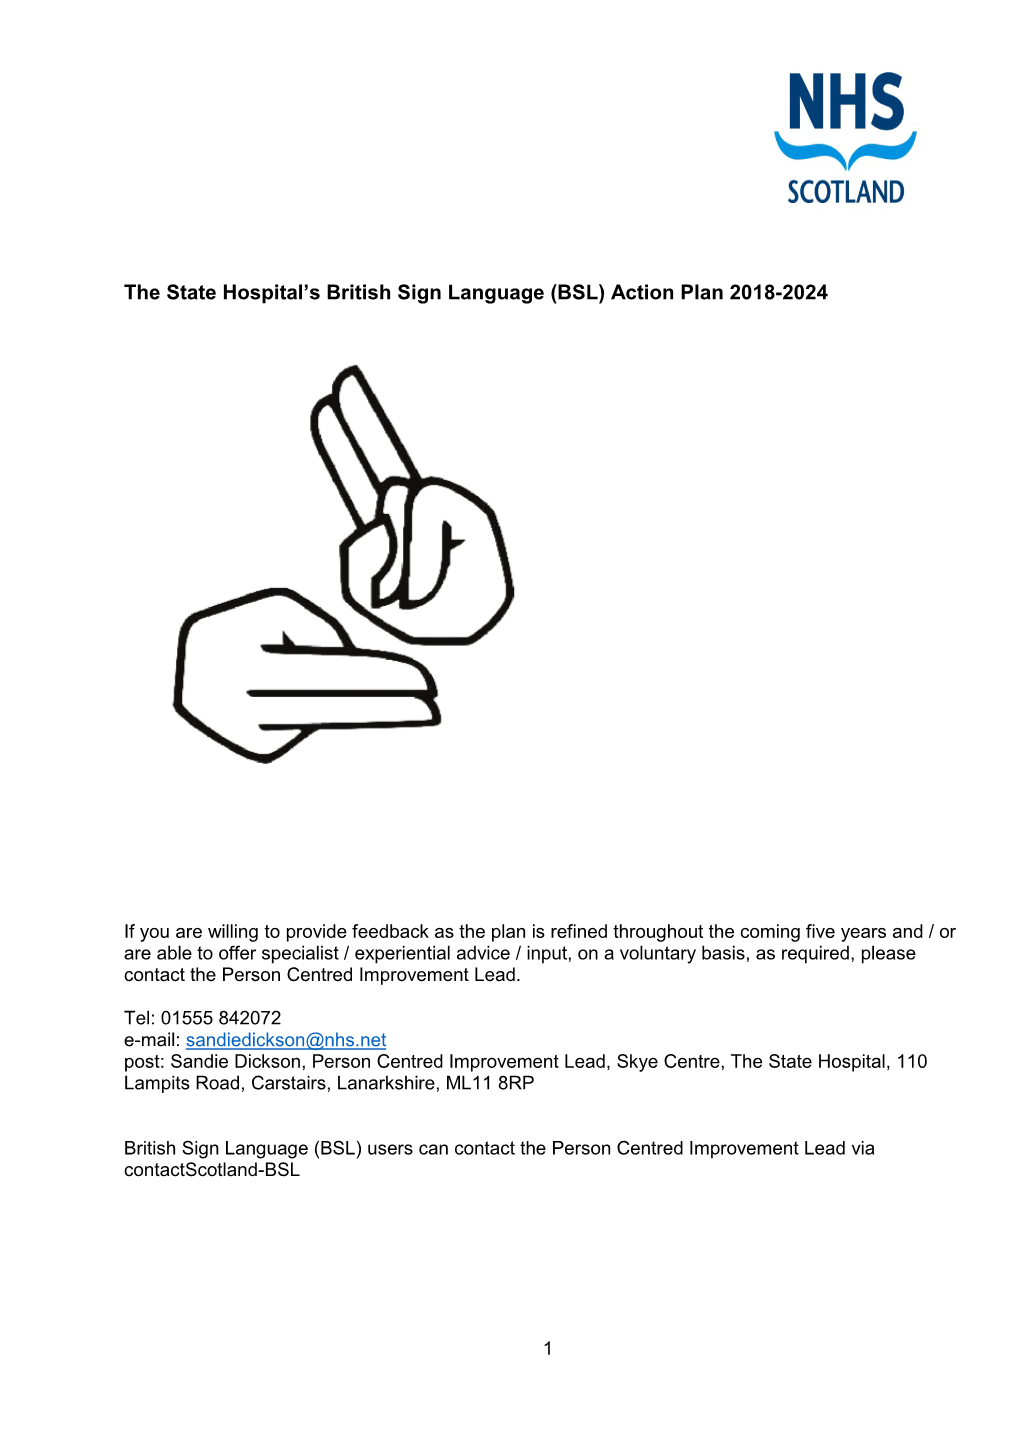 British Sign Language (BSL) Action Plan 2018-24